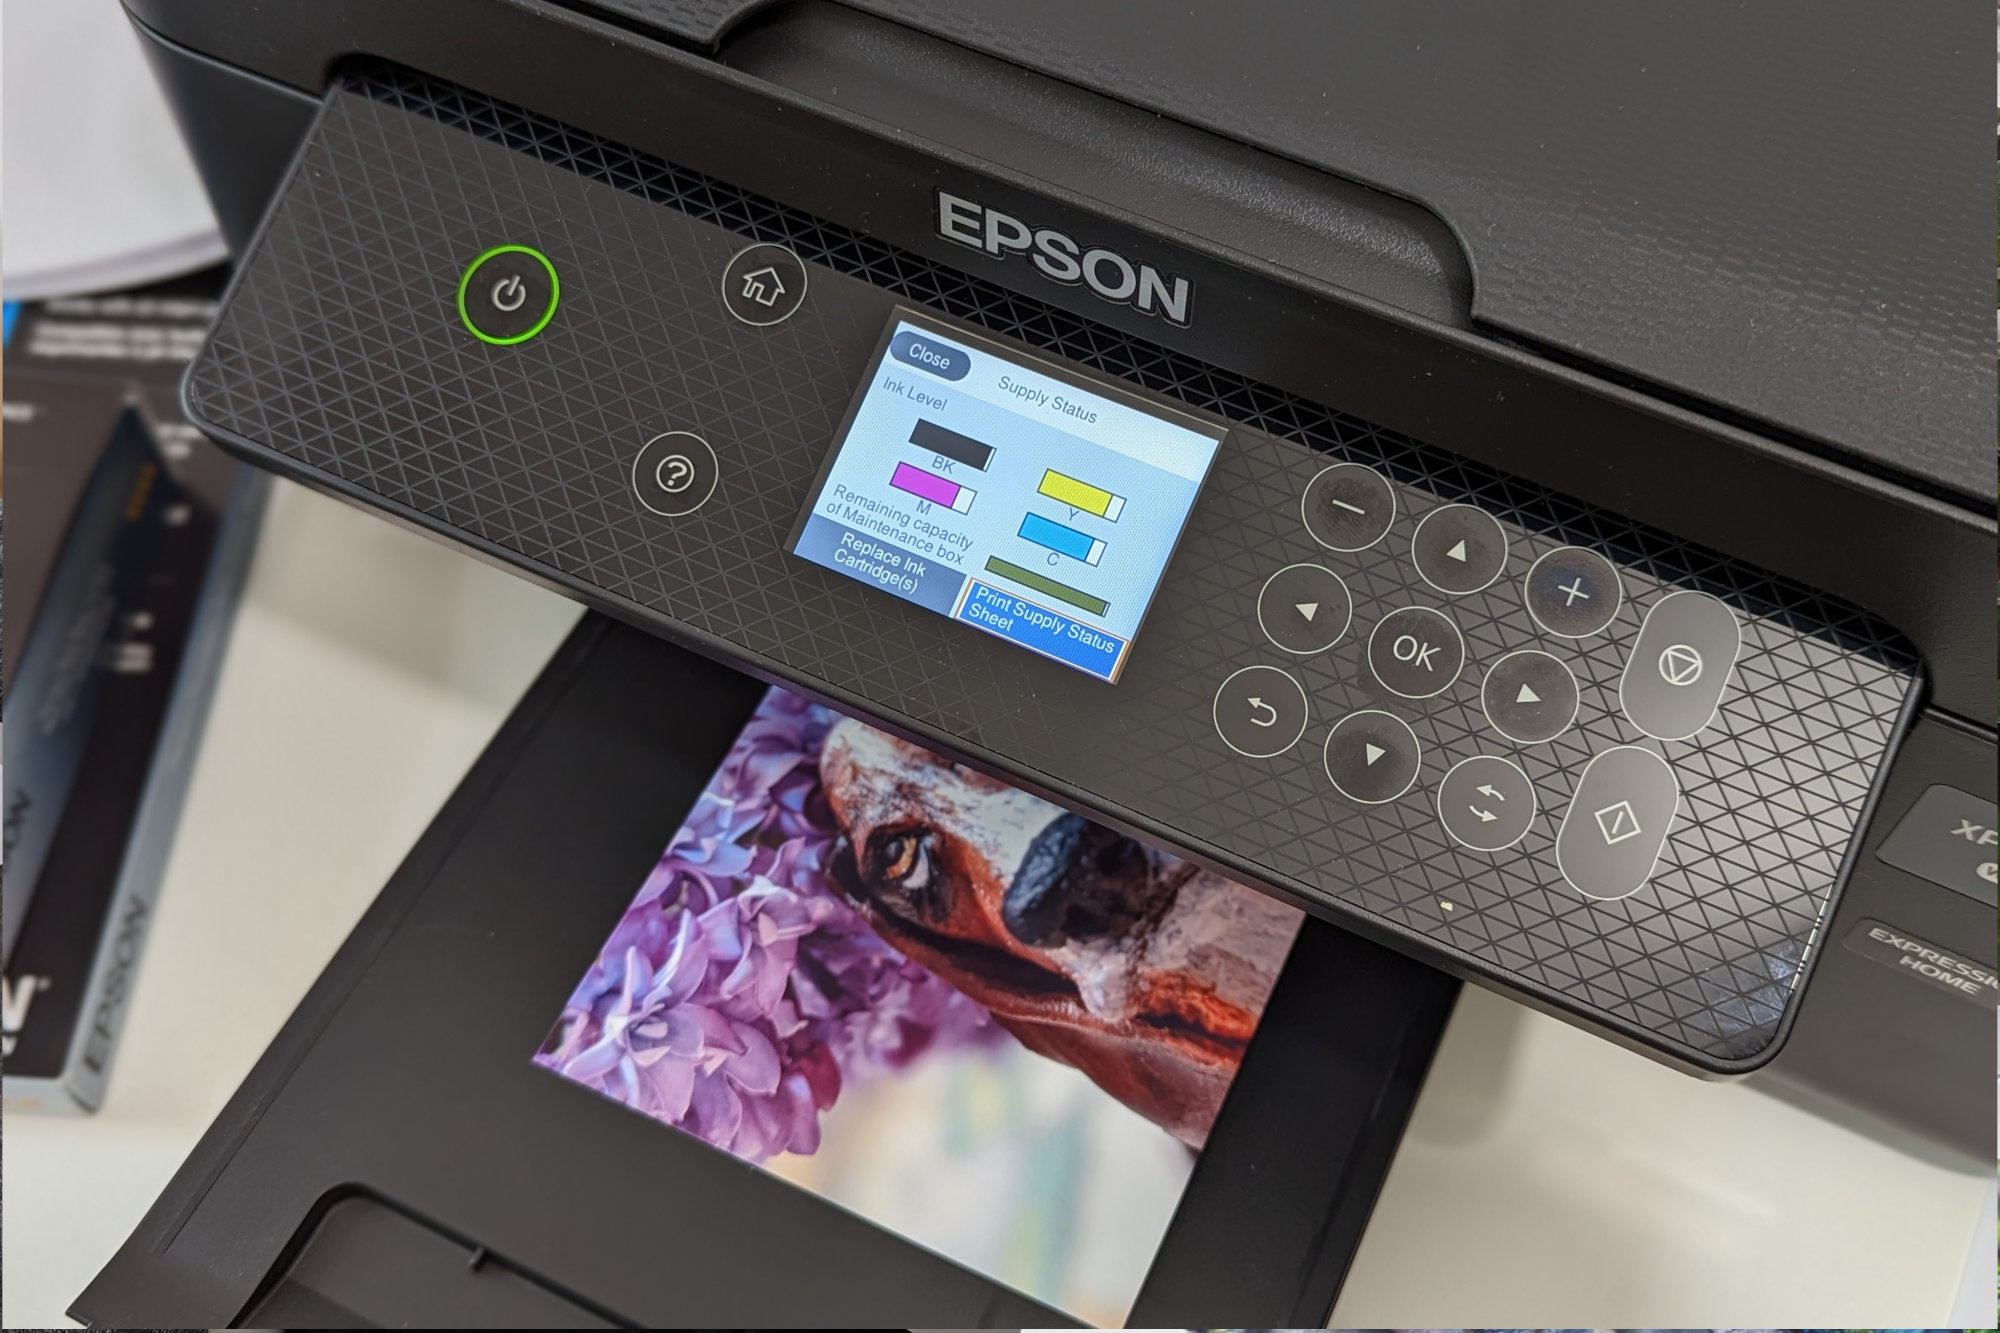 डिस्प्ले पर इंक लेवल के साथ Epson Expression Home XP-4200 पर 4x6 प्रिंट का काम चल रहा है।